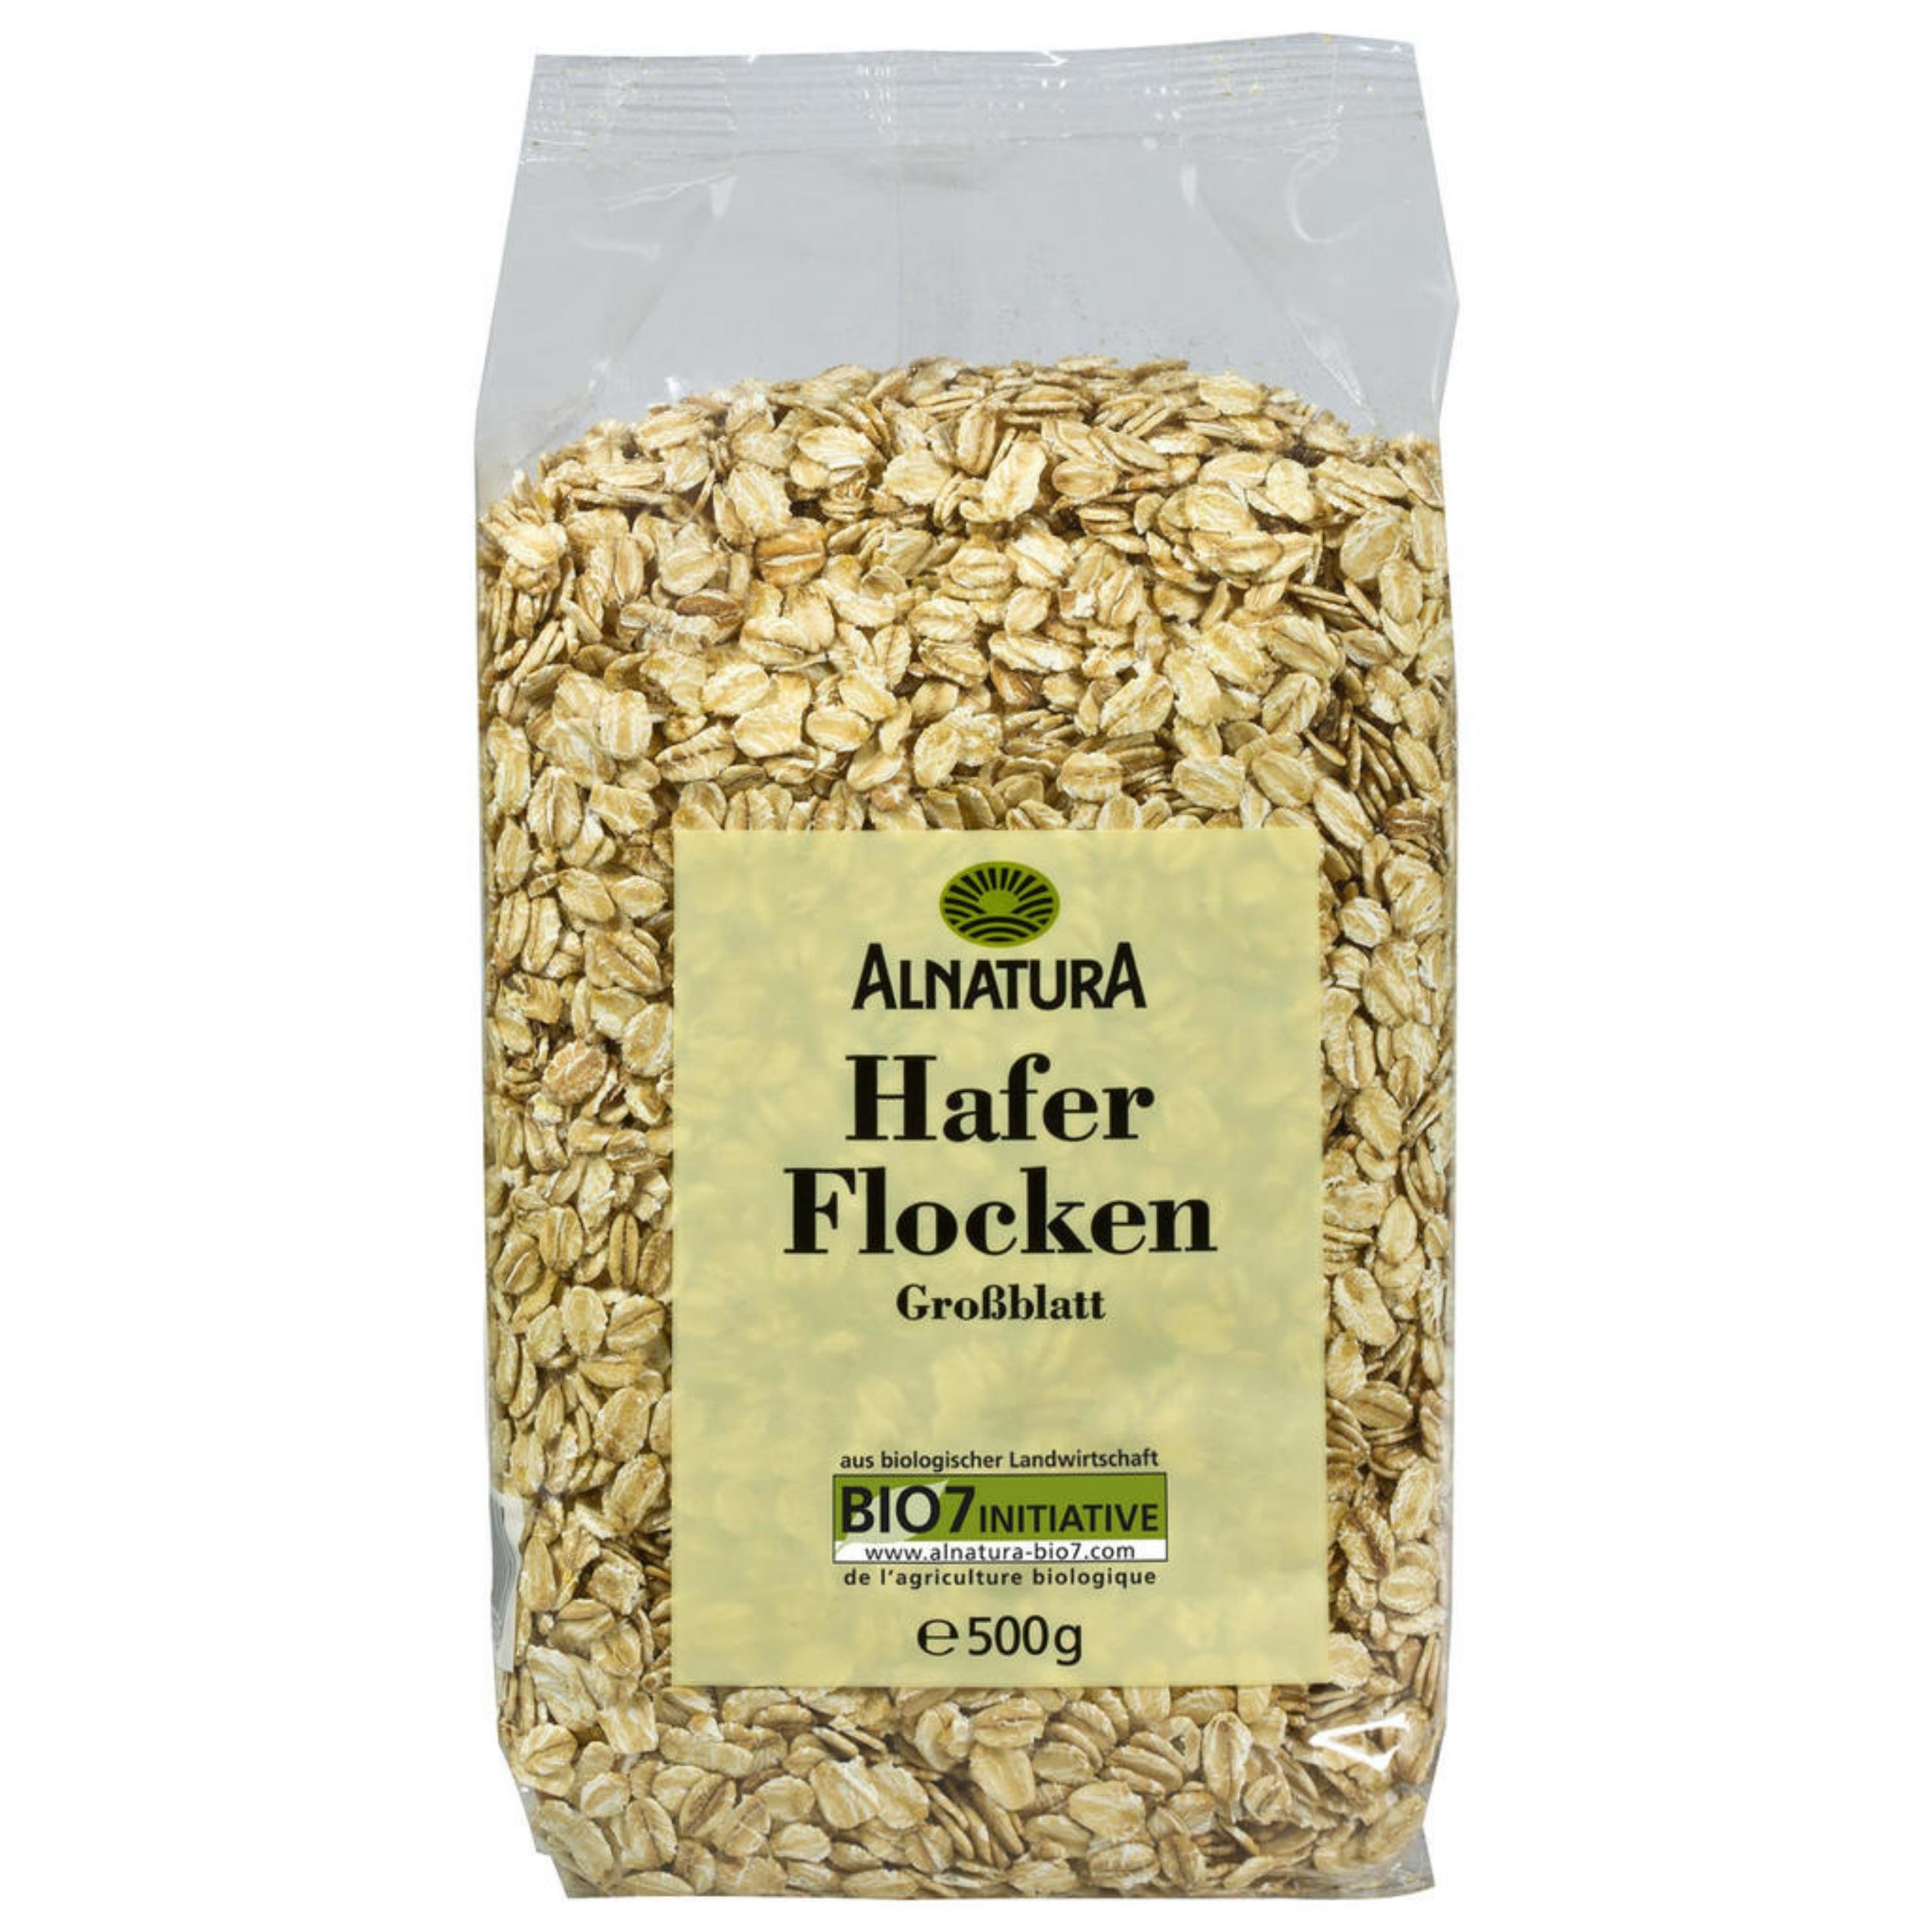 Yến mạch Hafer Flocken từ Đức túi 500g tốt cho sức khỏe